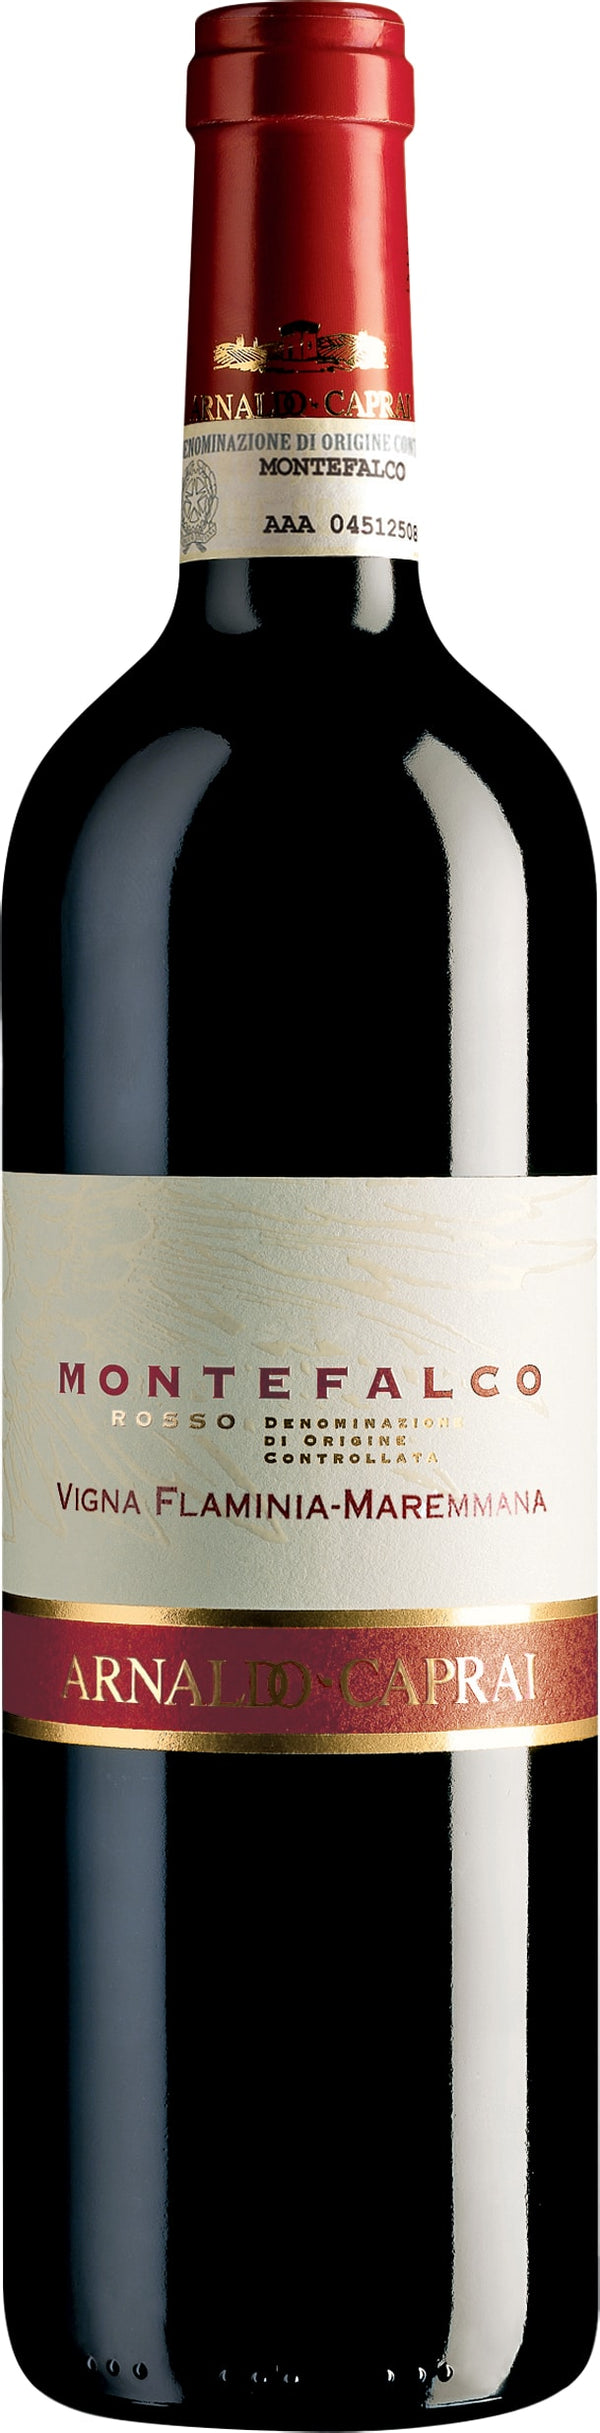 Arnaldo Caprai Montefalco Rosso Vigna Flamina 2019 6x75cl - Just Wines 